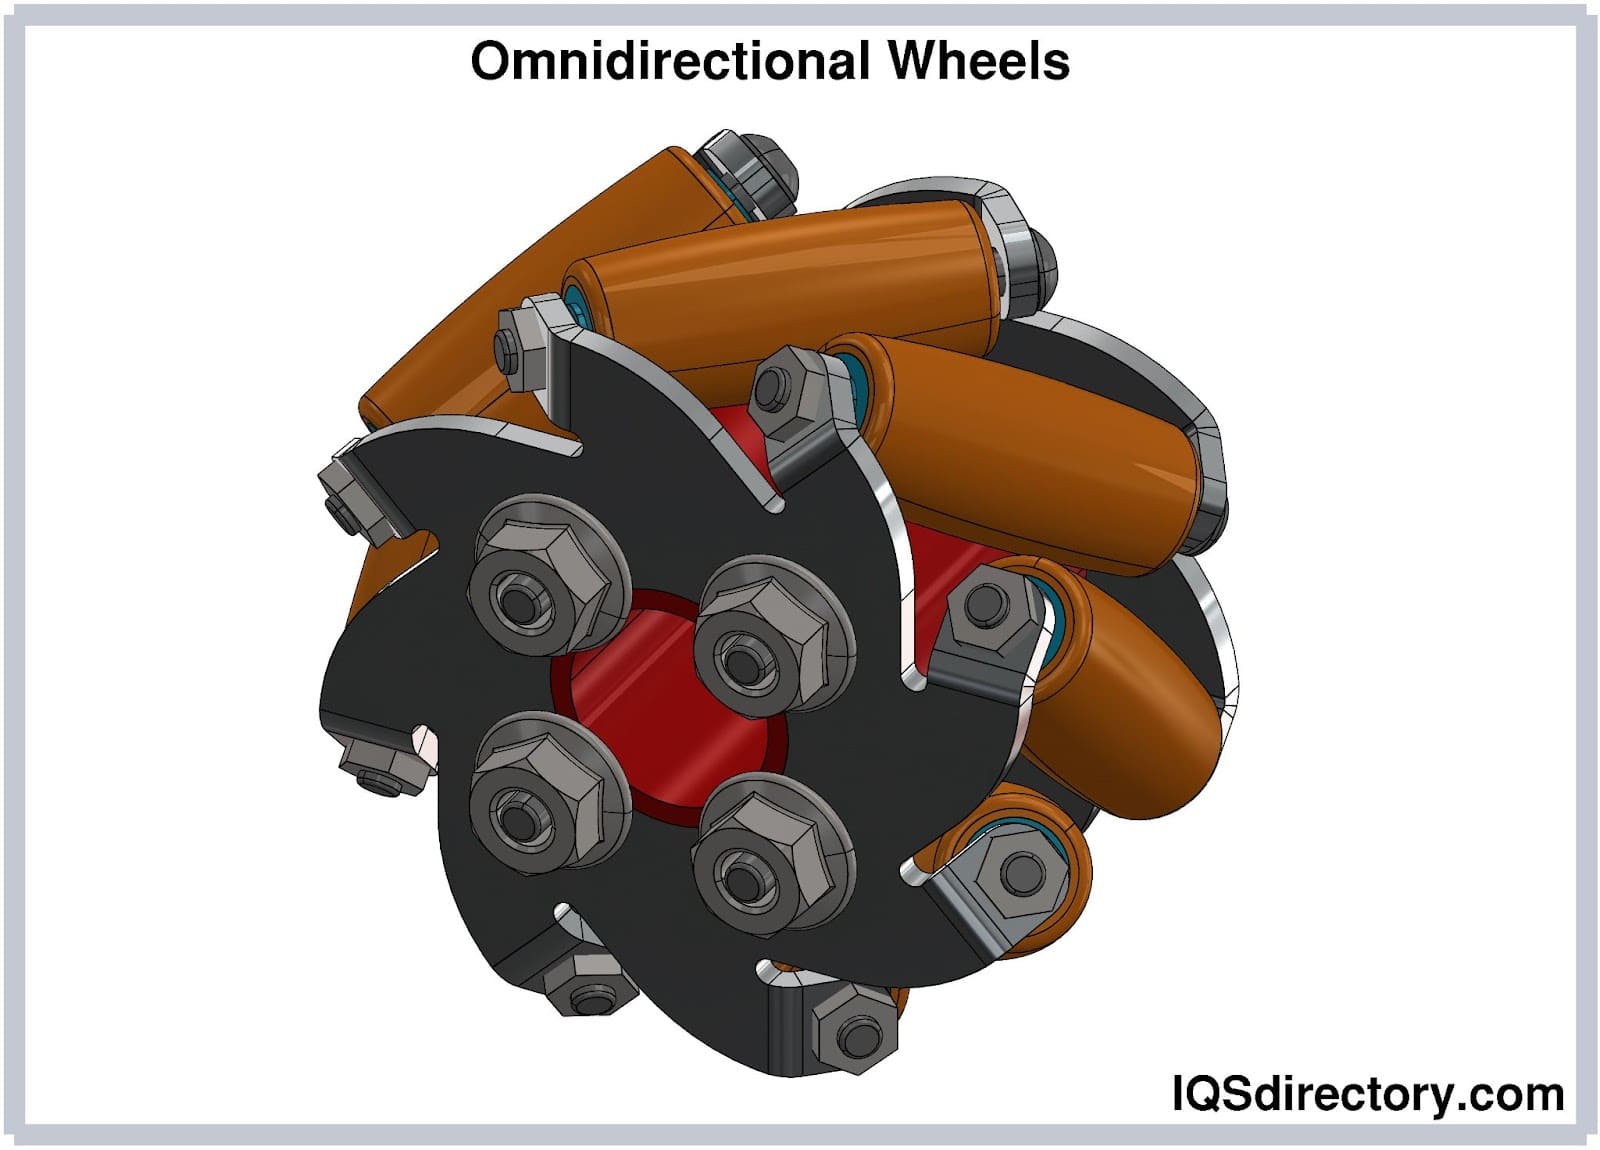 Omnidirectional Wheels